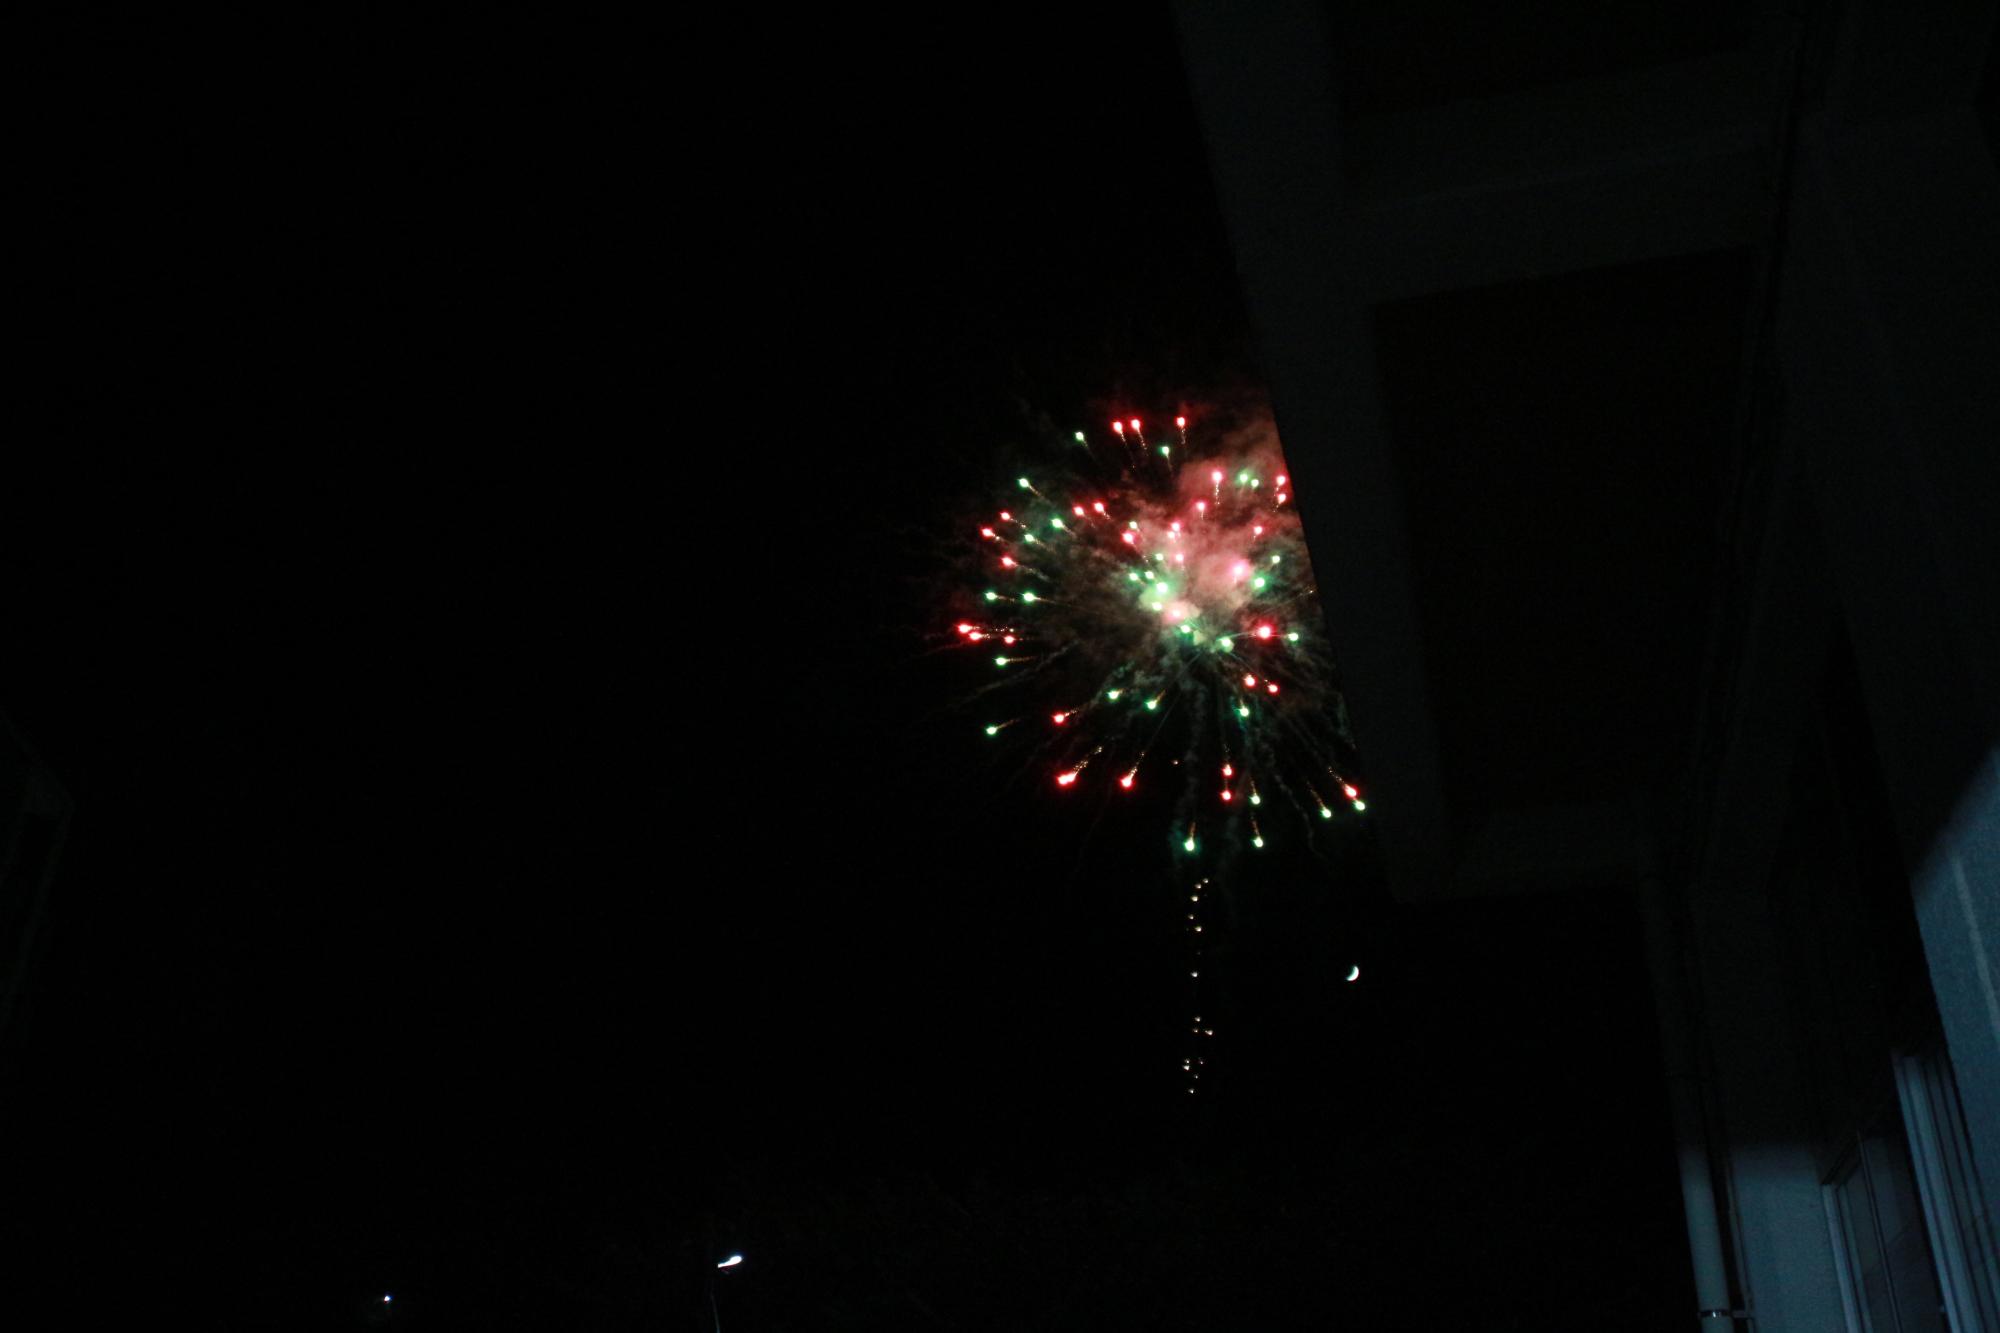 花火が打ち上げられ、夜空に赤色や緑色の光の玉が広がっている写真